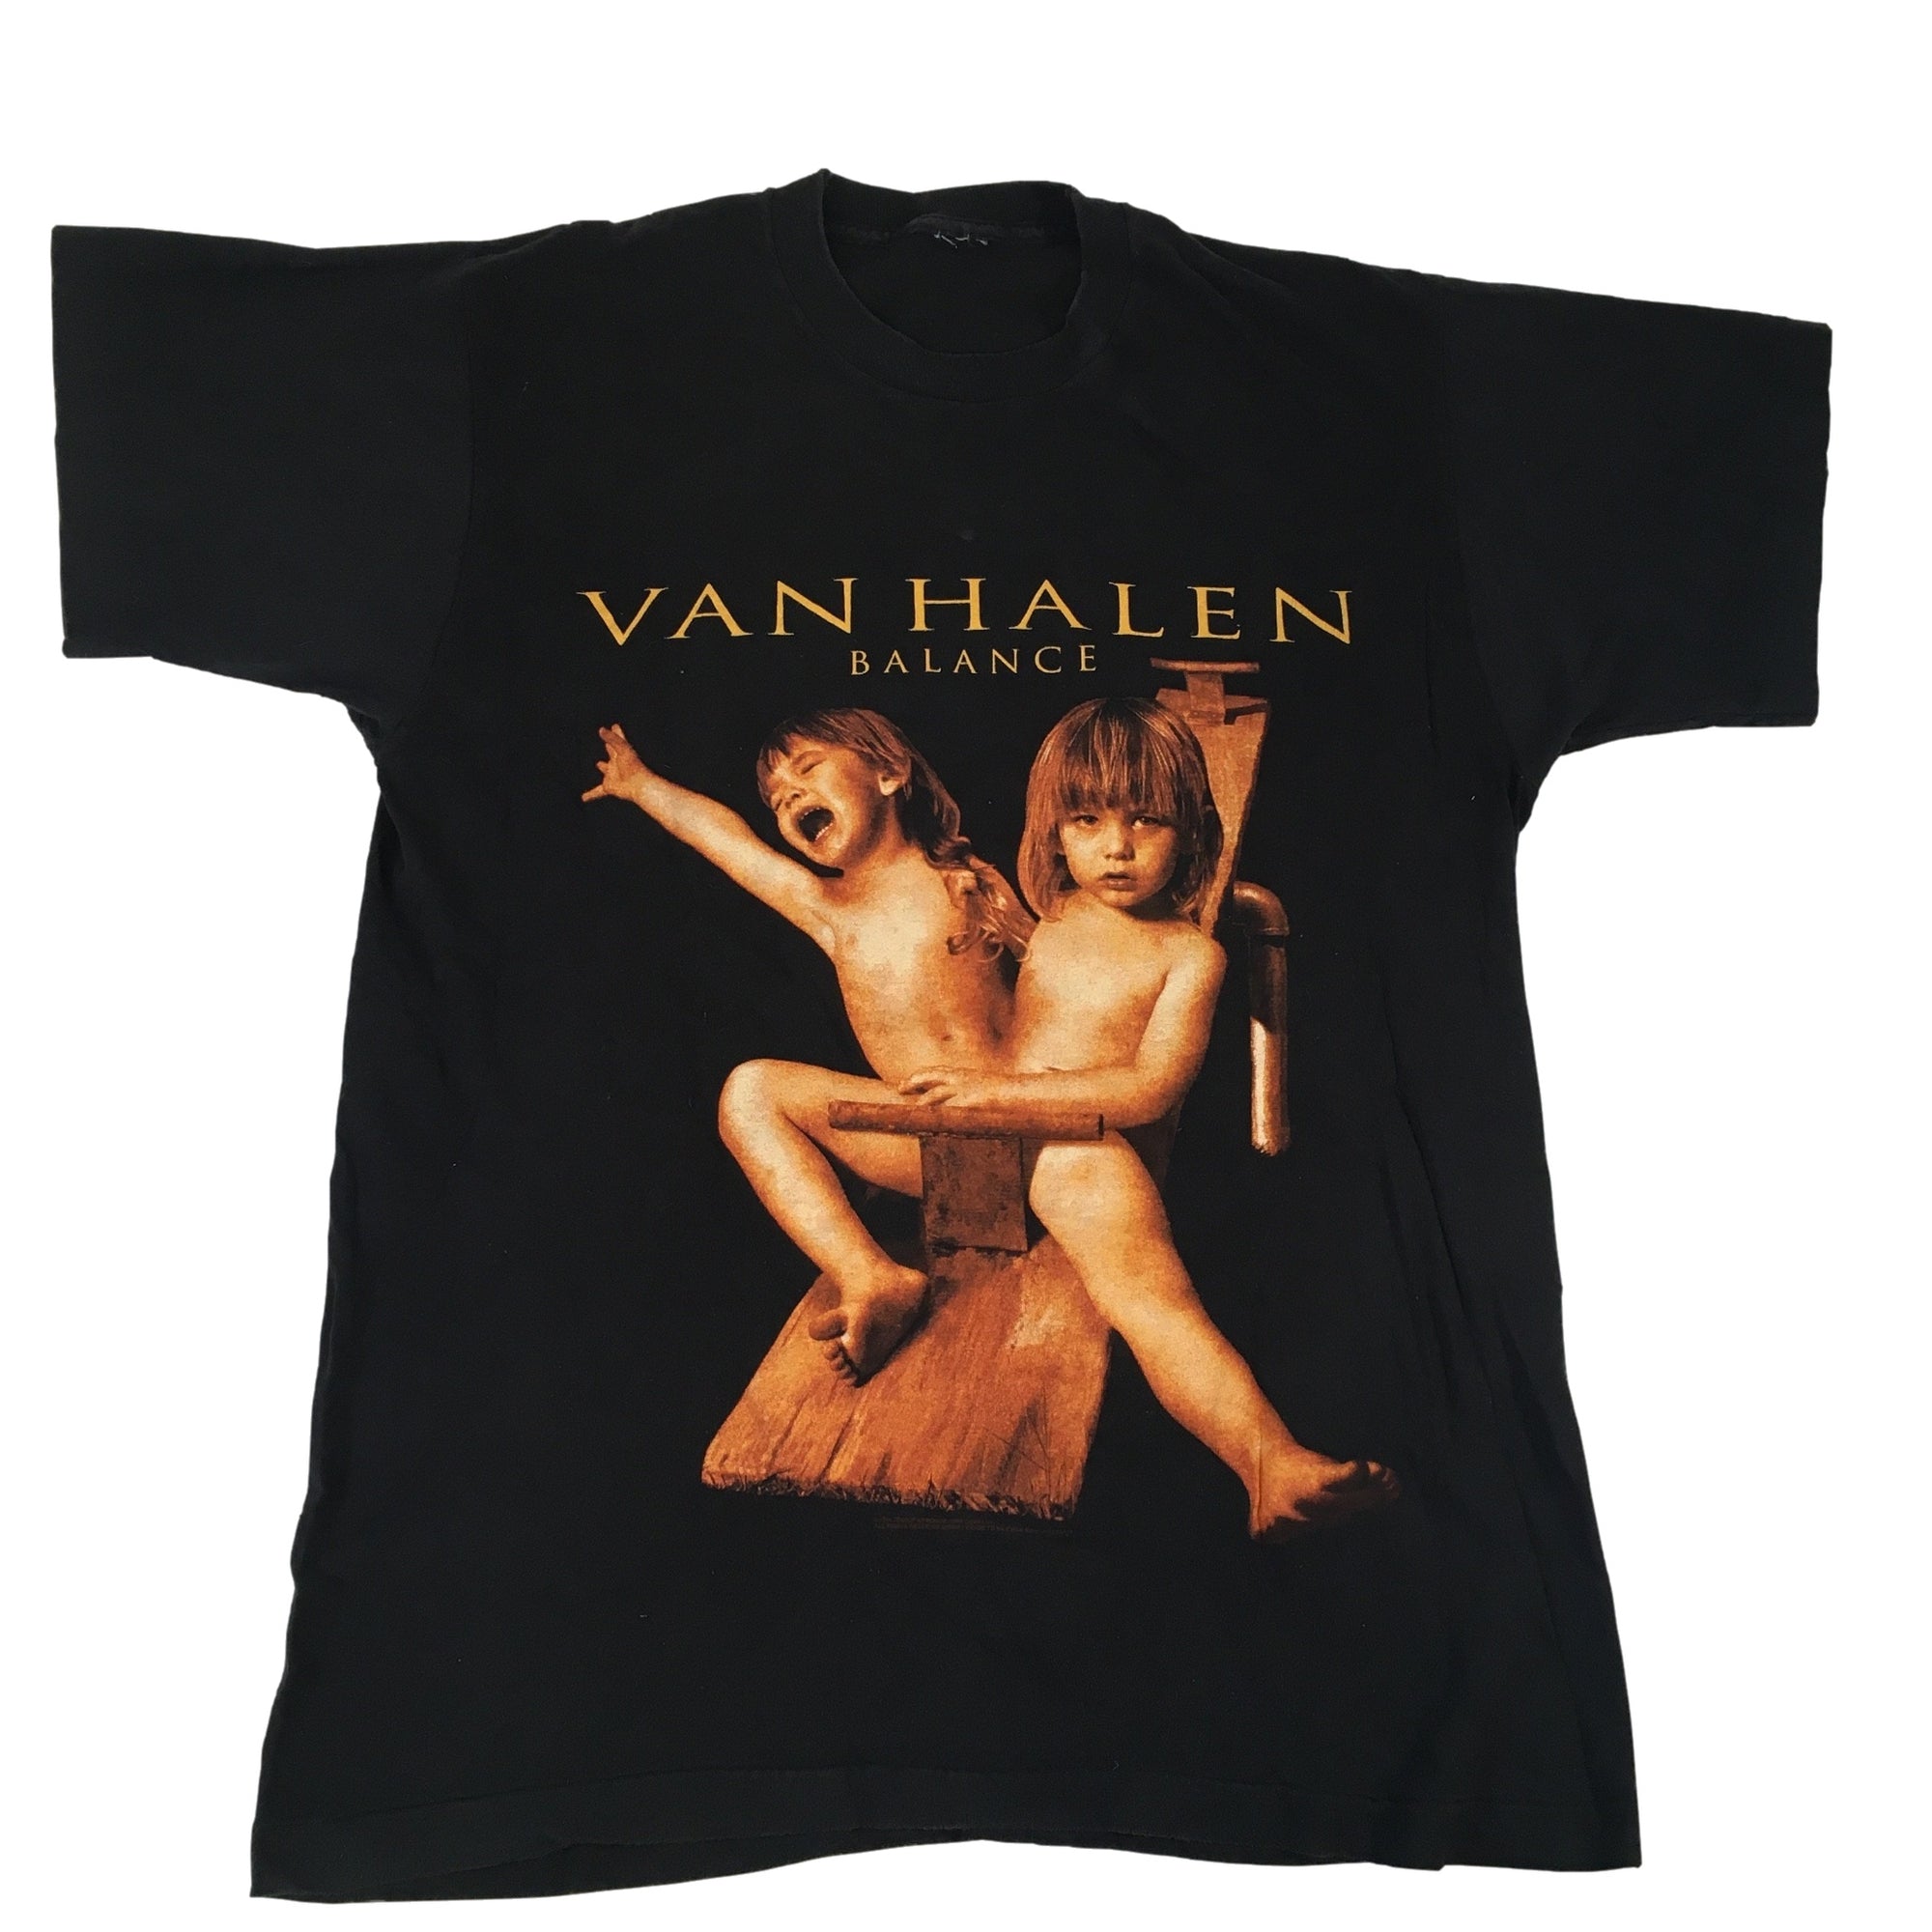 Vintage Van Halen "Balance" T-Shirt - jointcustodydc